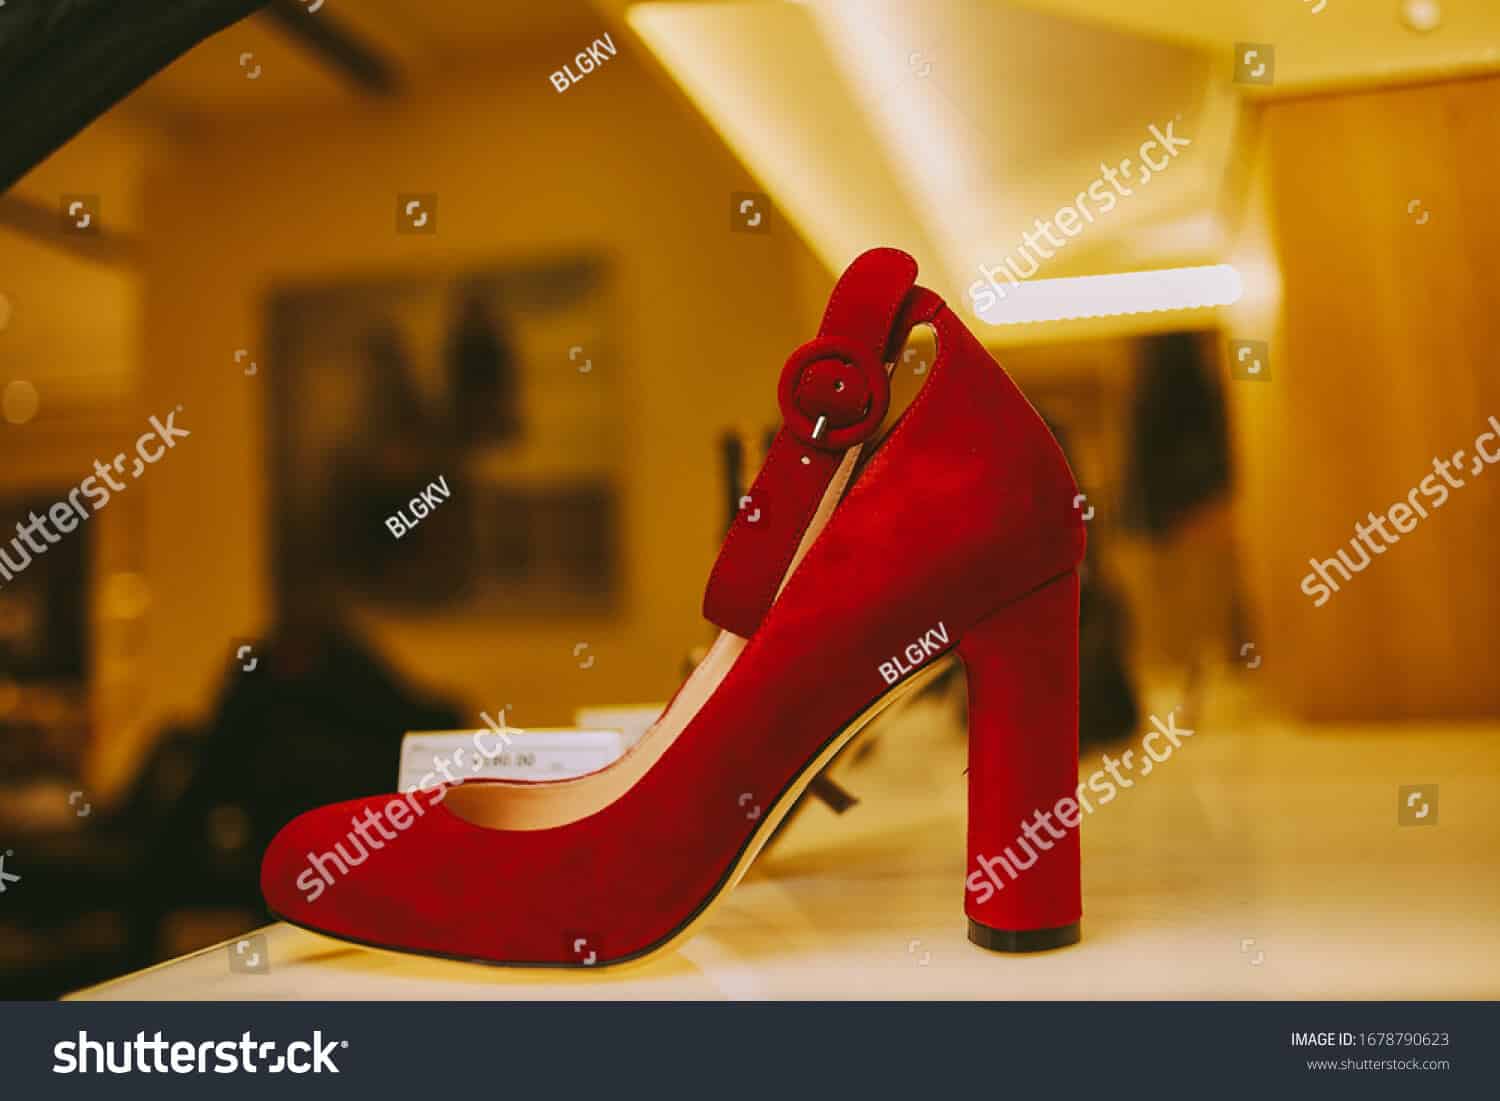 97 ngàn hình ảnh giày nữ chất lượng cao trên Shutterstock